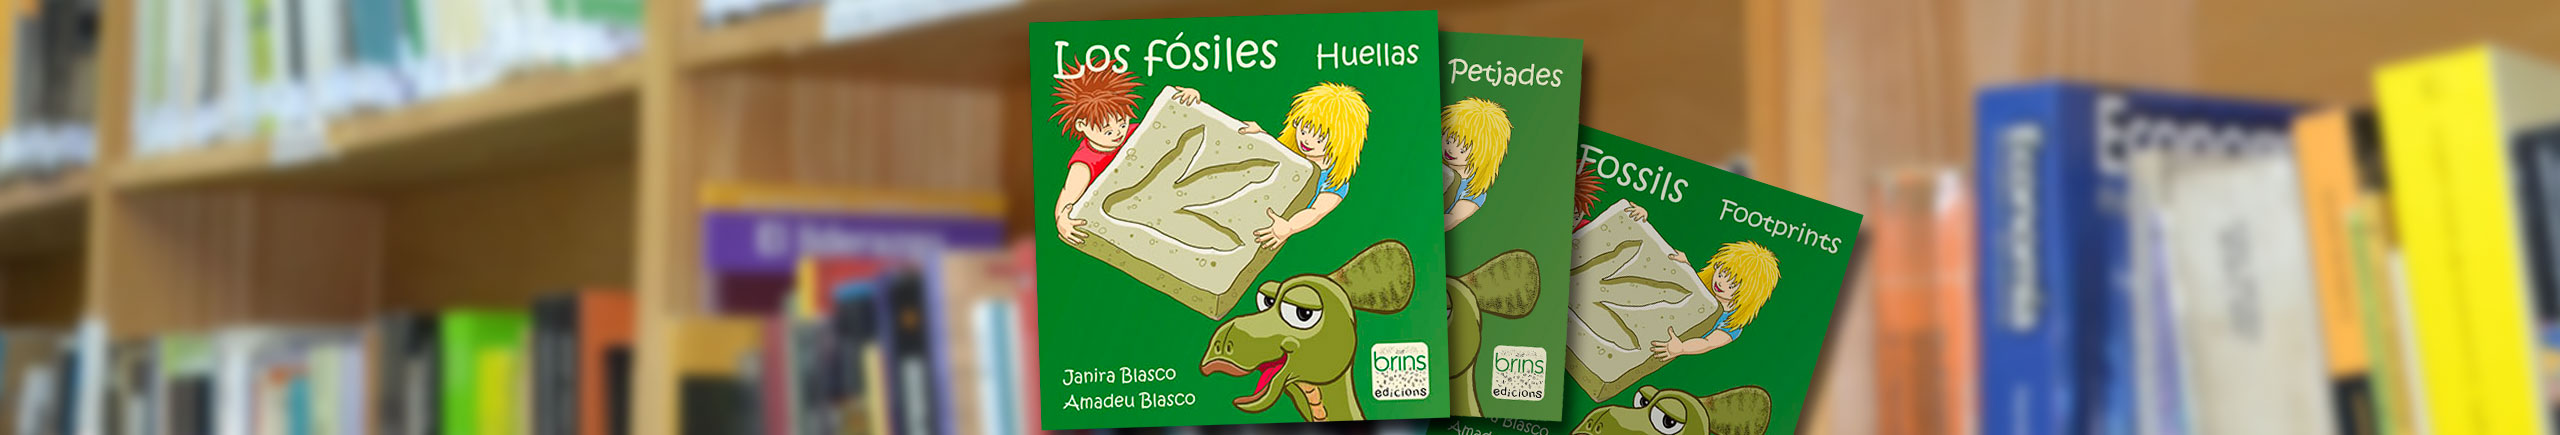 los-fosiles